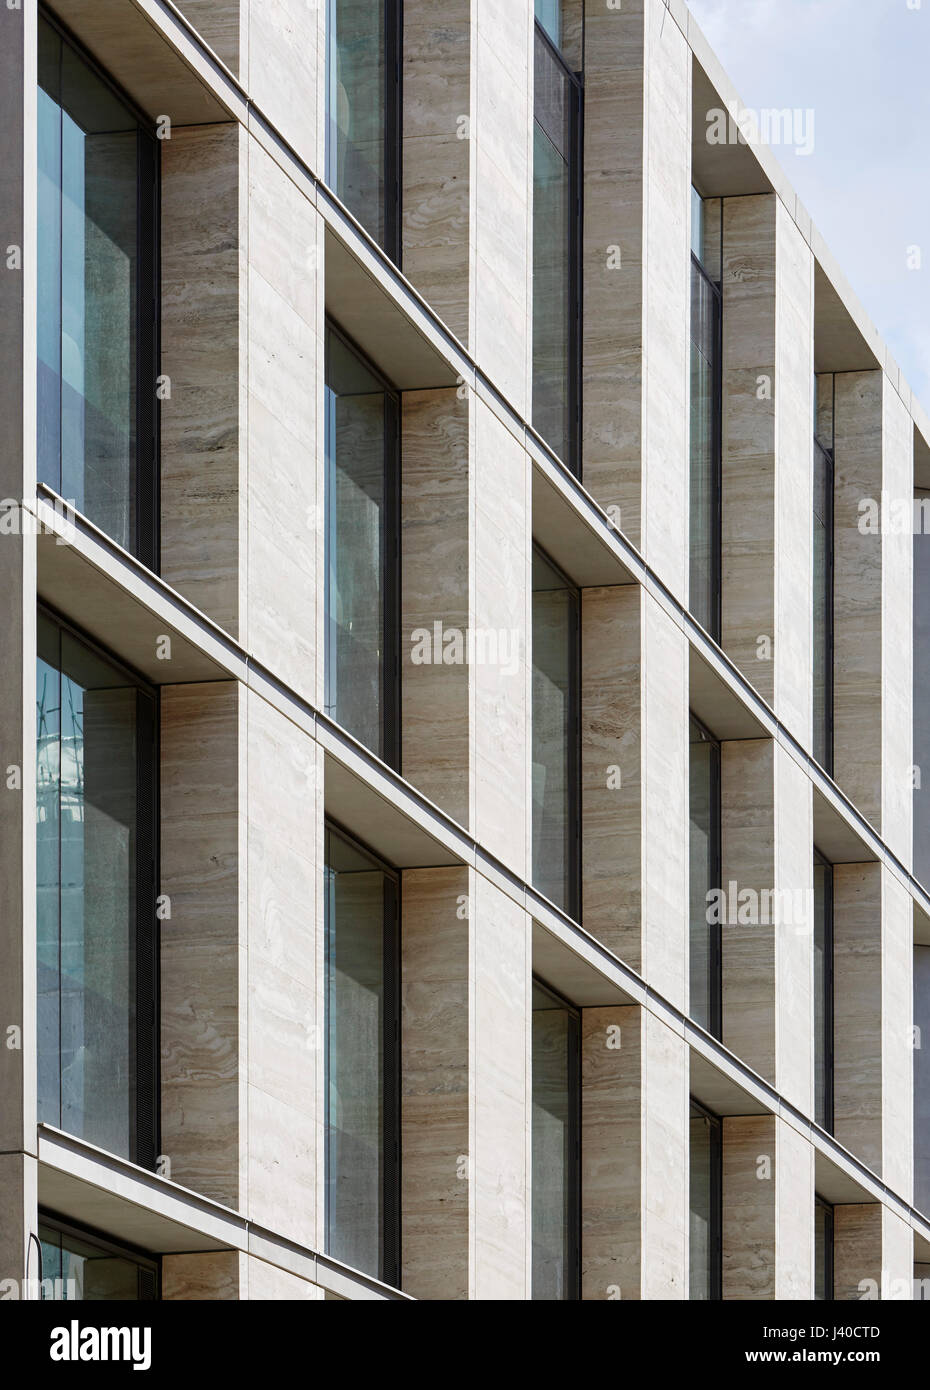 Travertin Fassade mit Verglasung in Sicht. Chancery Lane, London, Vereinigtes Königreich. Architekt: Bennetts Associates Architects, 2015. Stockfoto